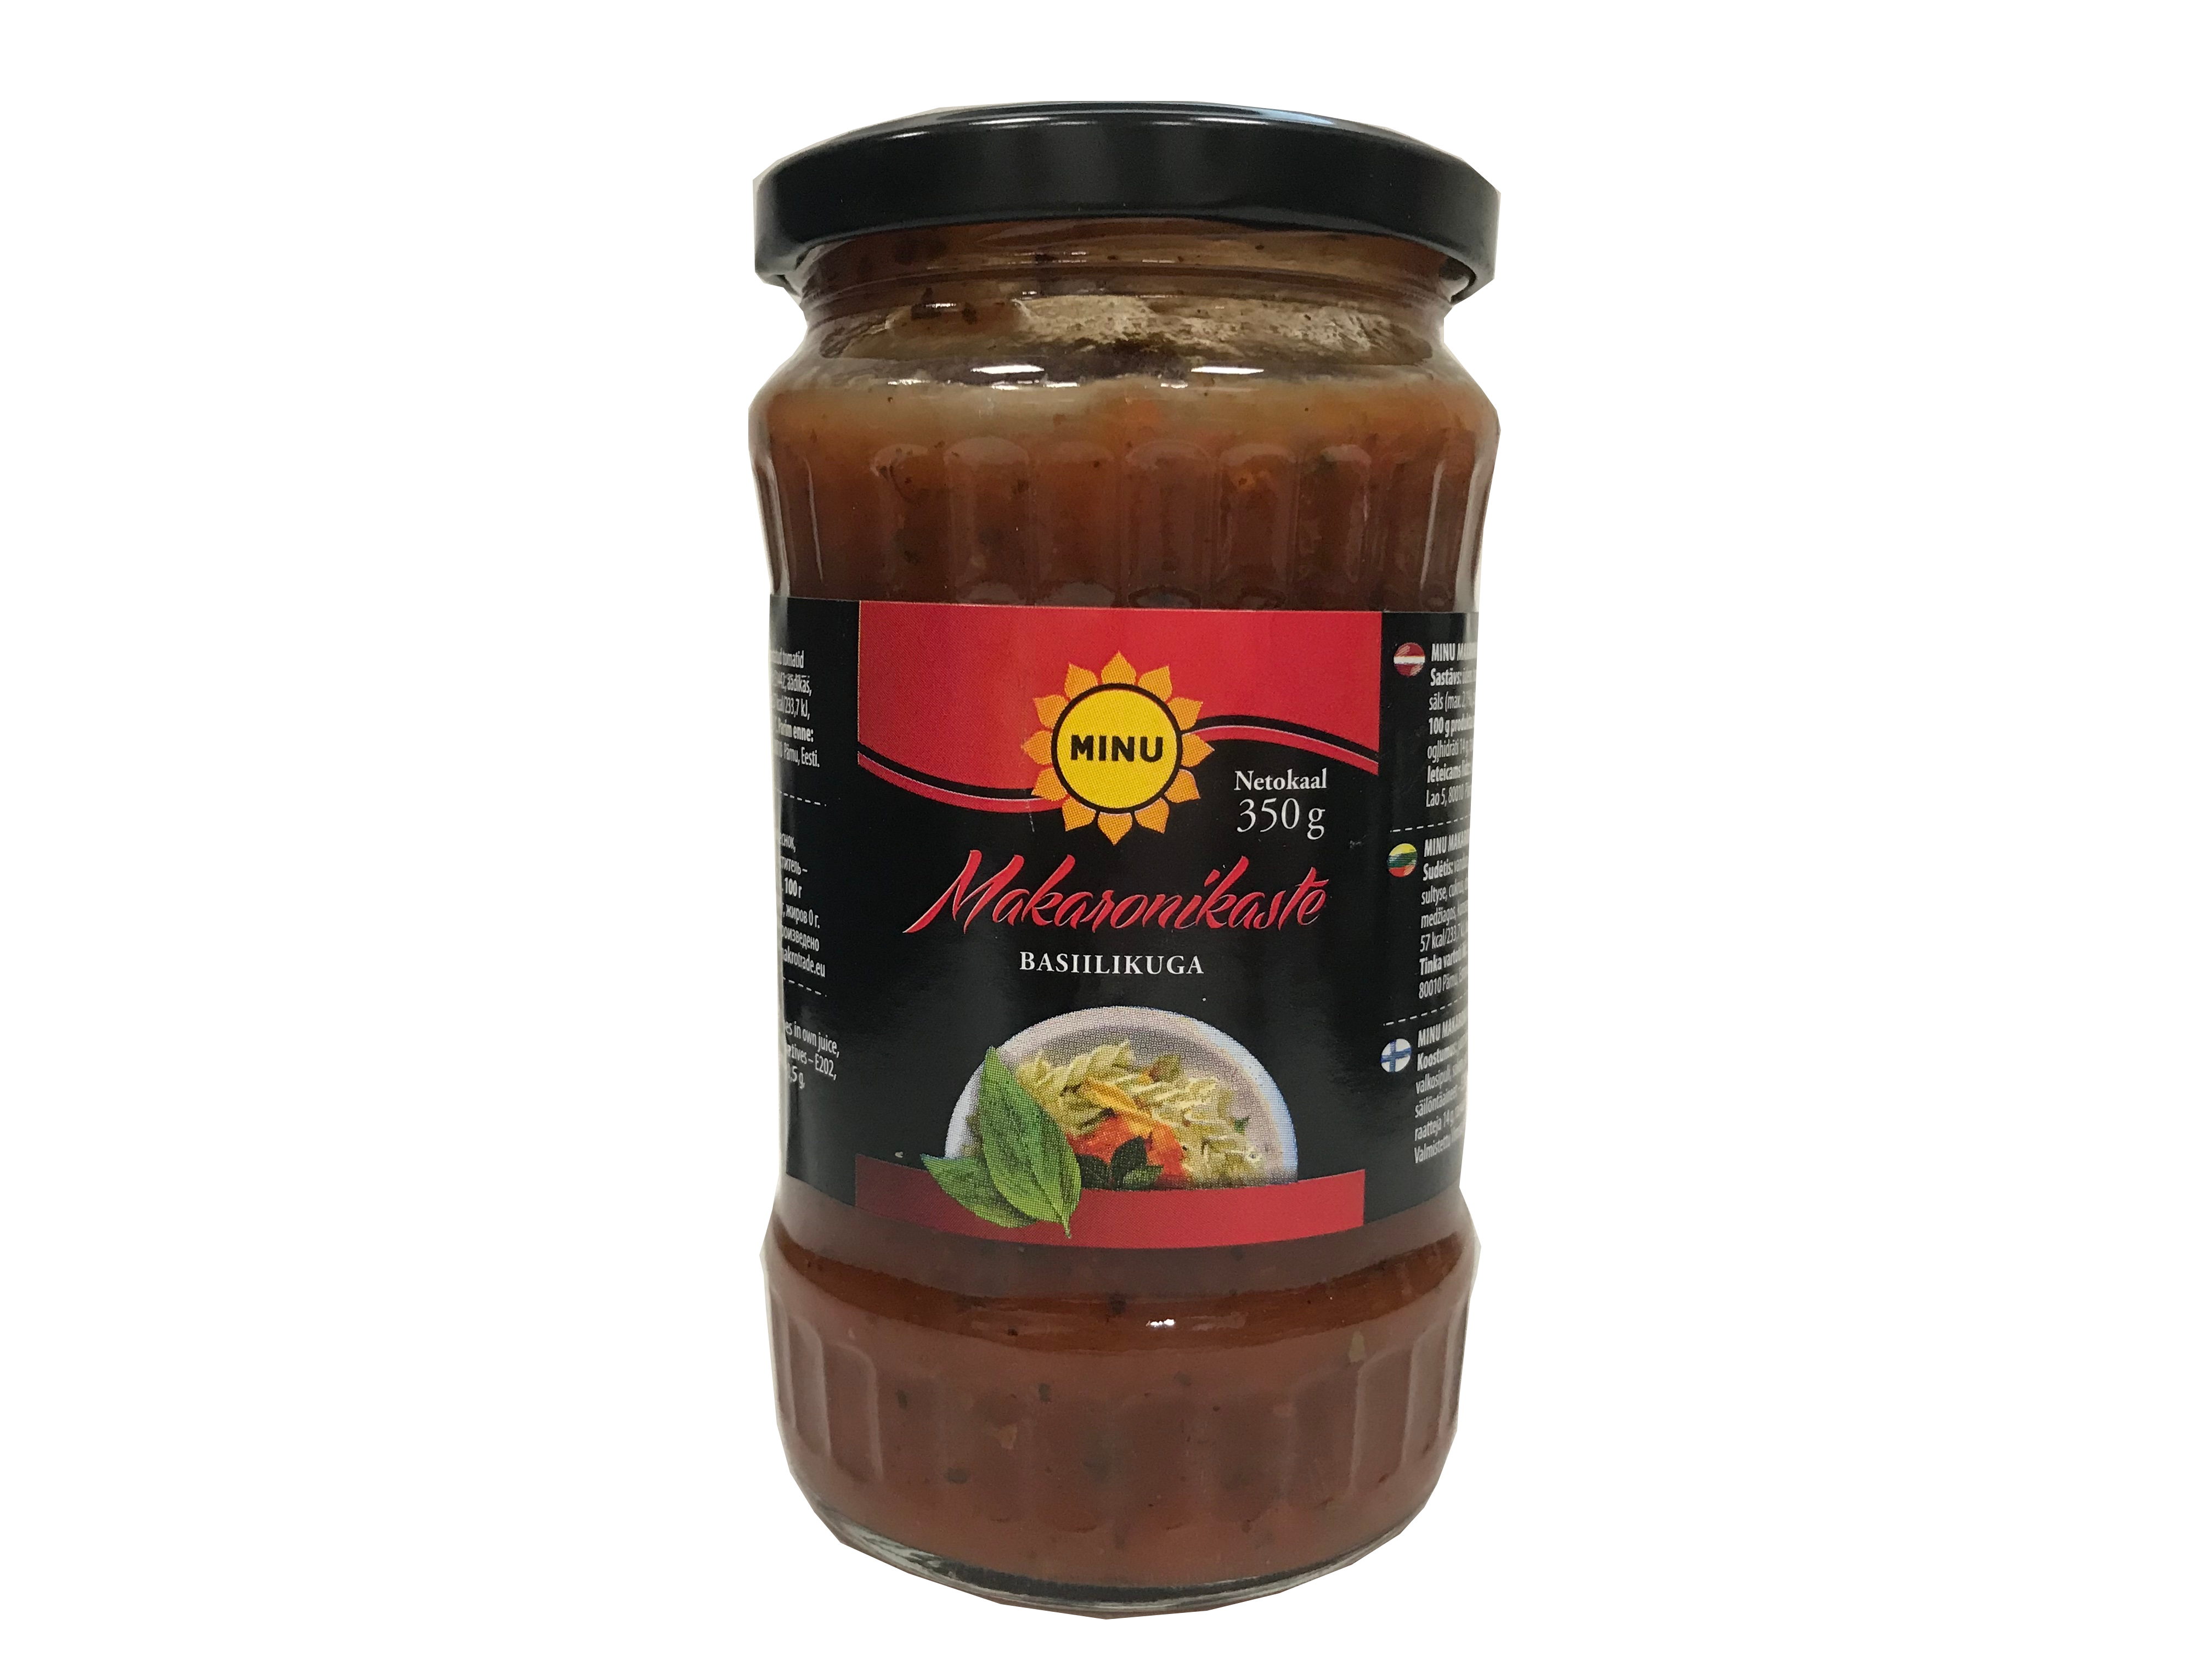 Minu pasta sauce with basil 350g